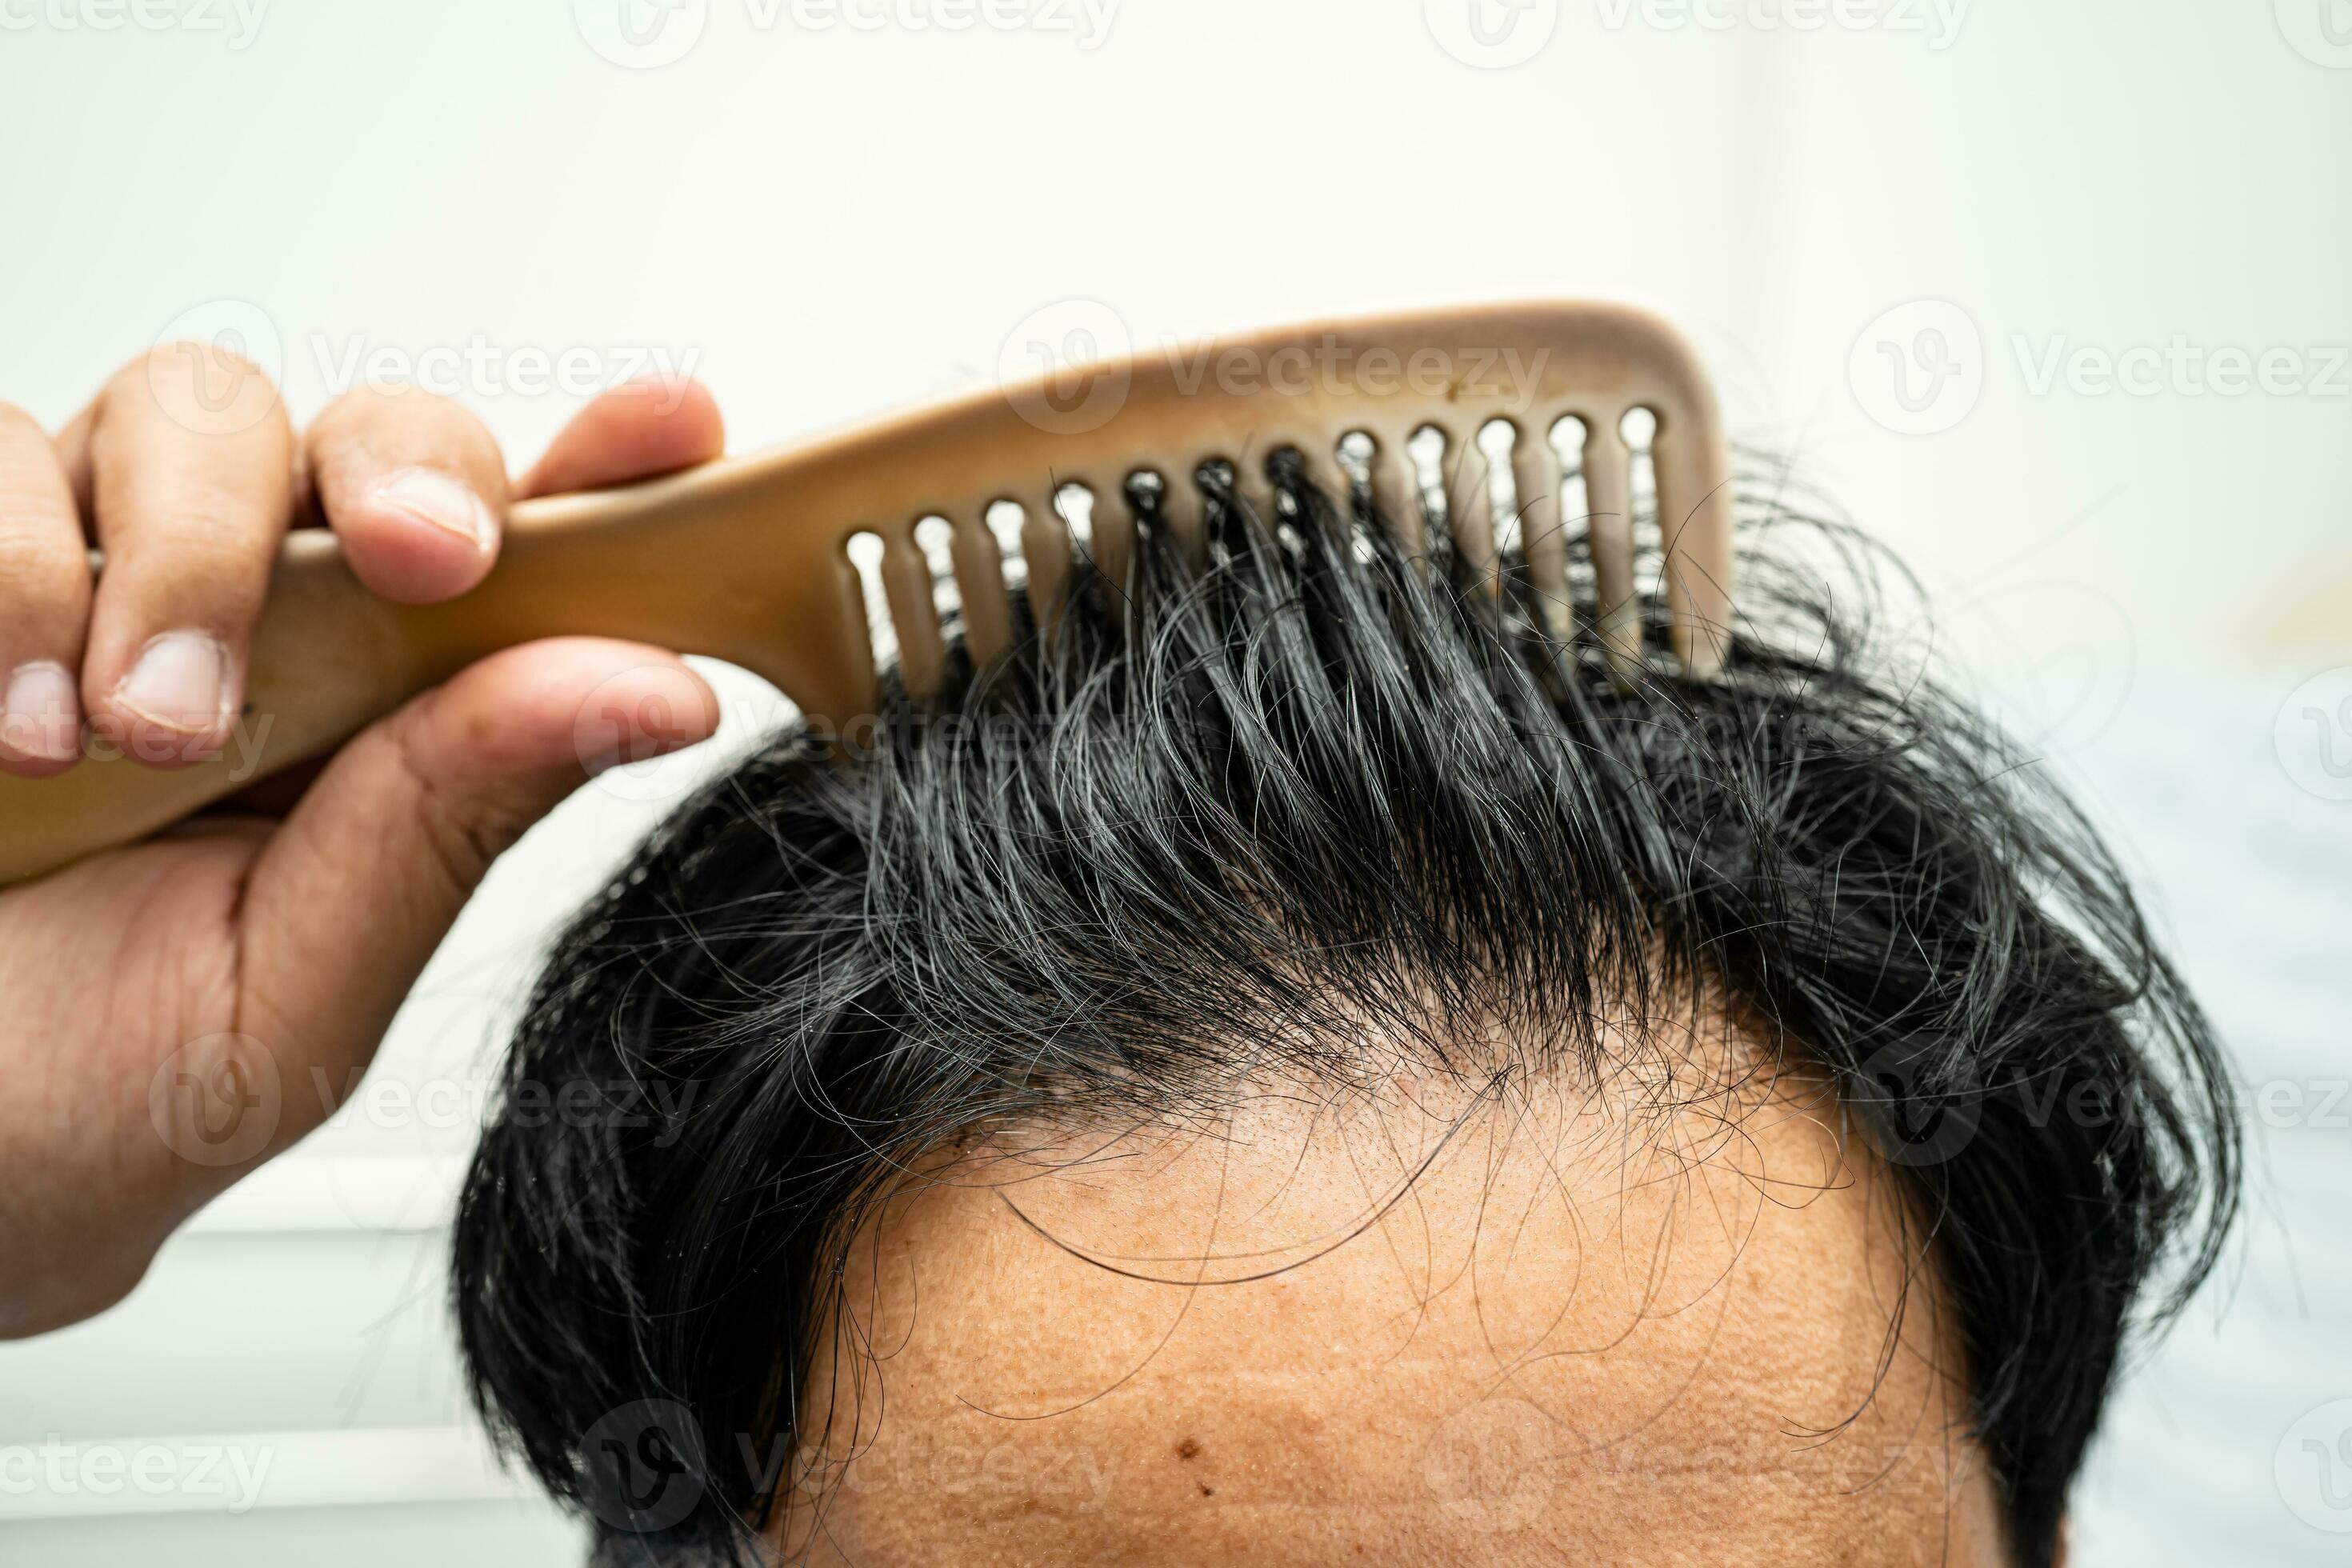 https://static.vecteezy.com/ti/photos-gratuite/p2/26495586-chauve-a-de-face-de-tete-et-commencer-non-perte-cheveux-glabre-de-mature-asiatique-affaires-intelligent-actif-bureau-homme-photo.jpg